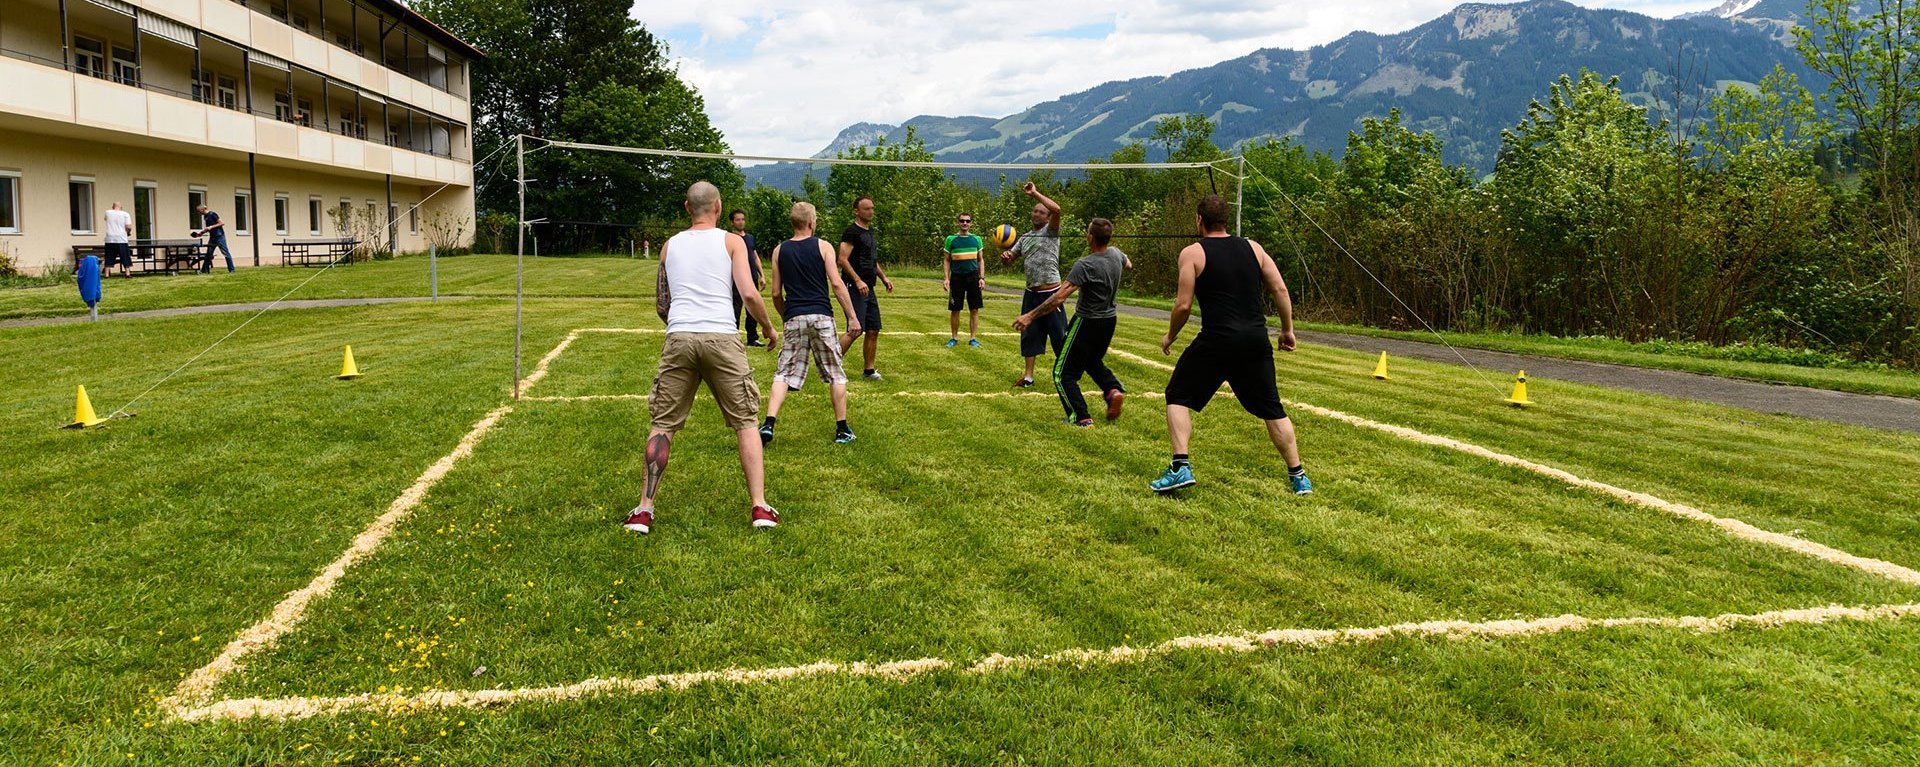 Volleyball auf der Wiese - am Netz stehen zwei Manschaften - im Hintergrund Alpen